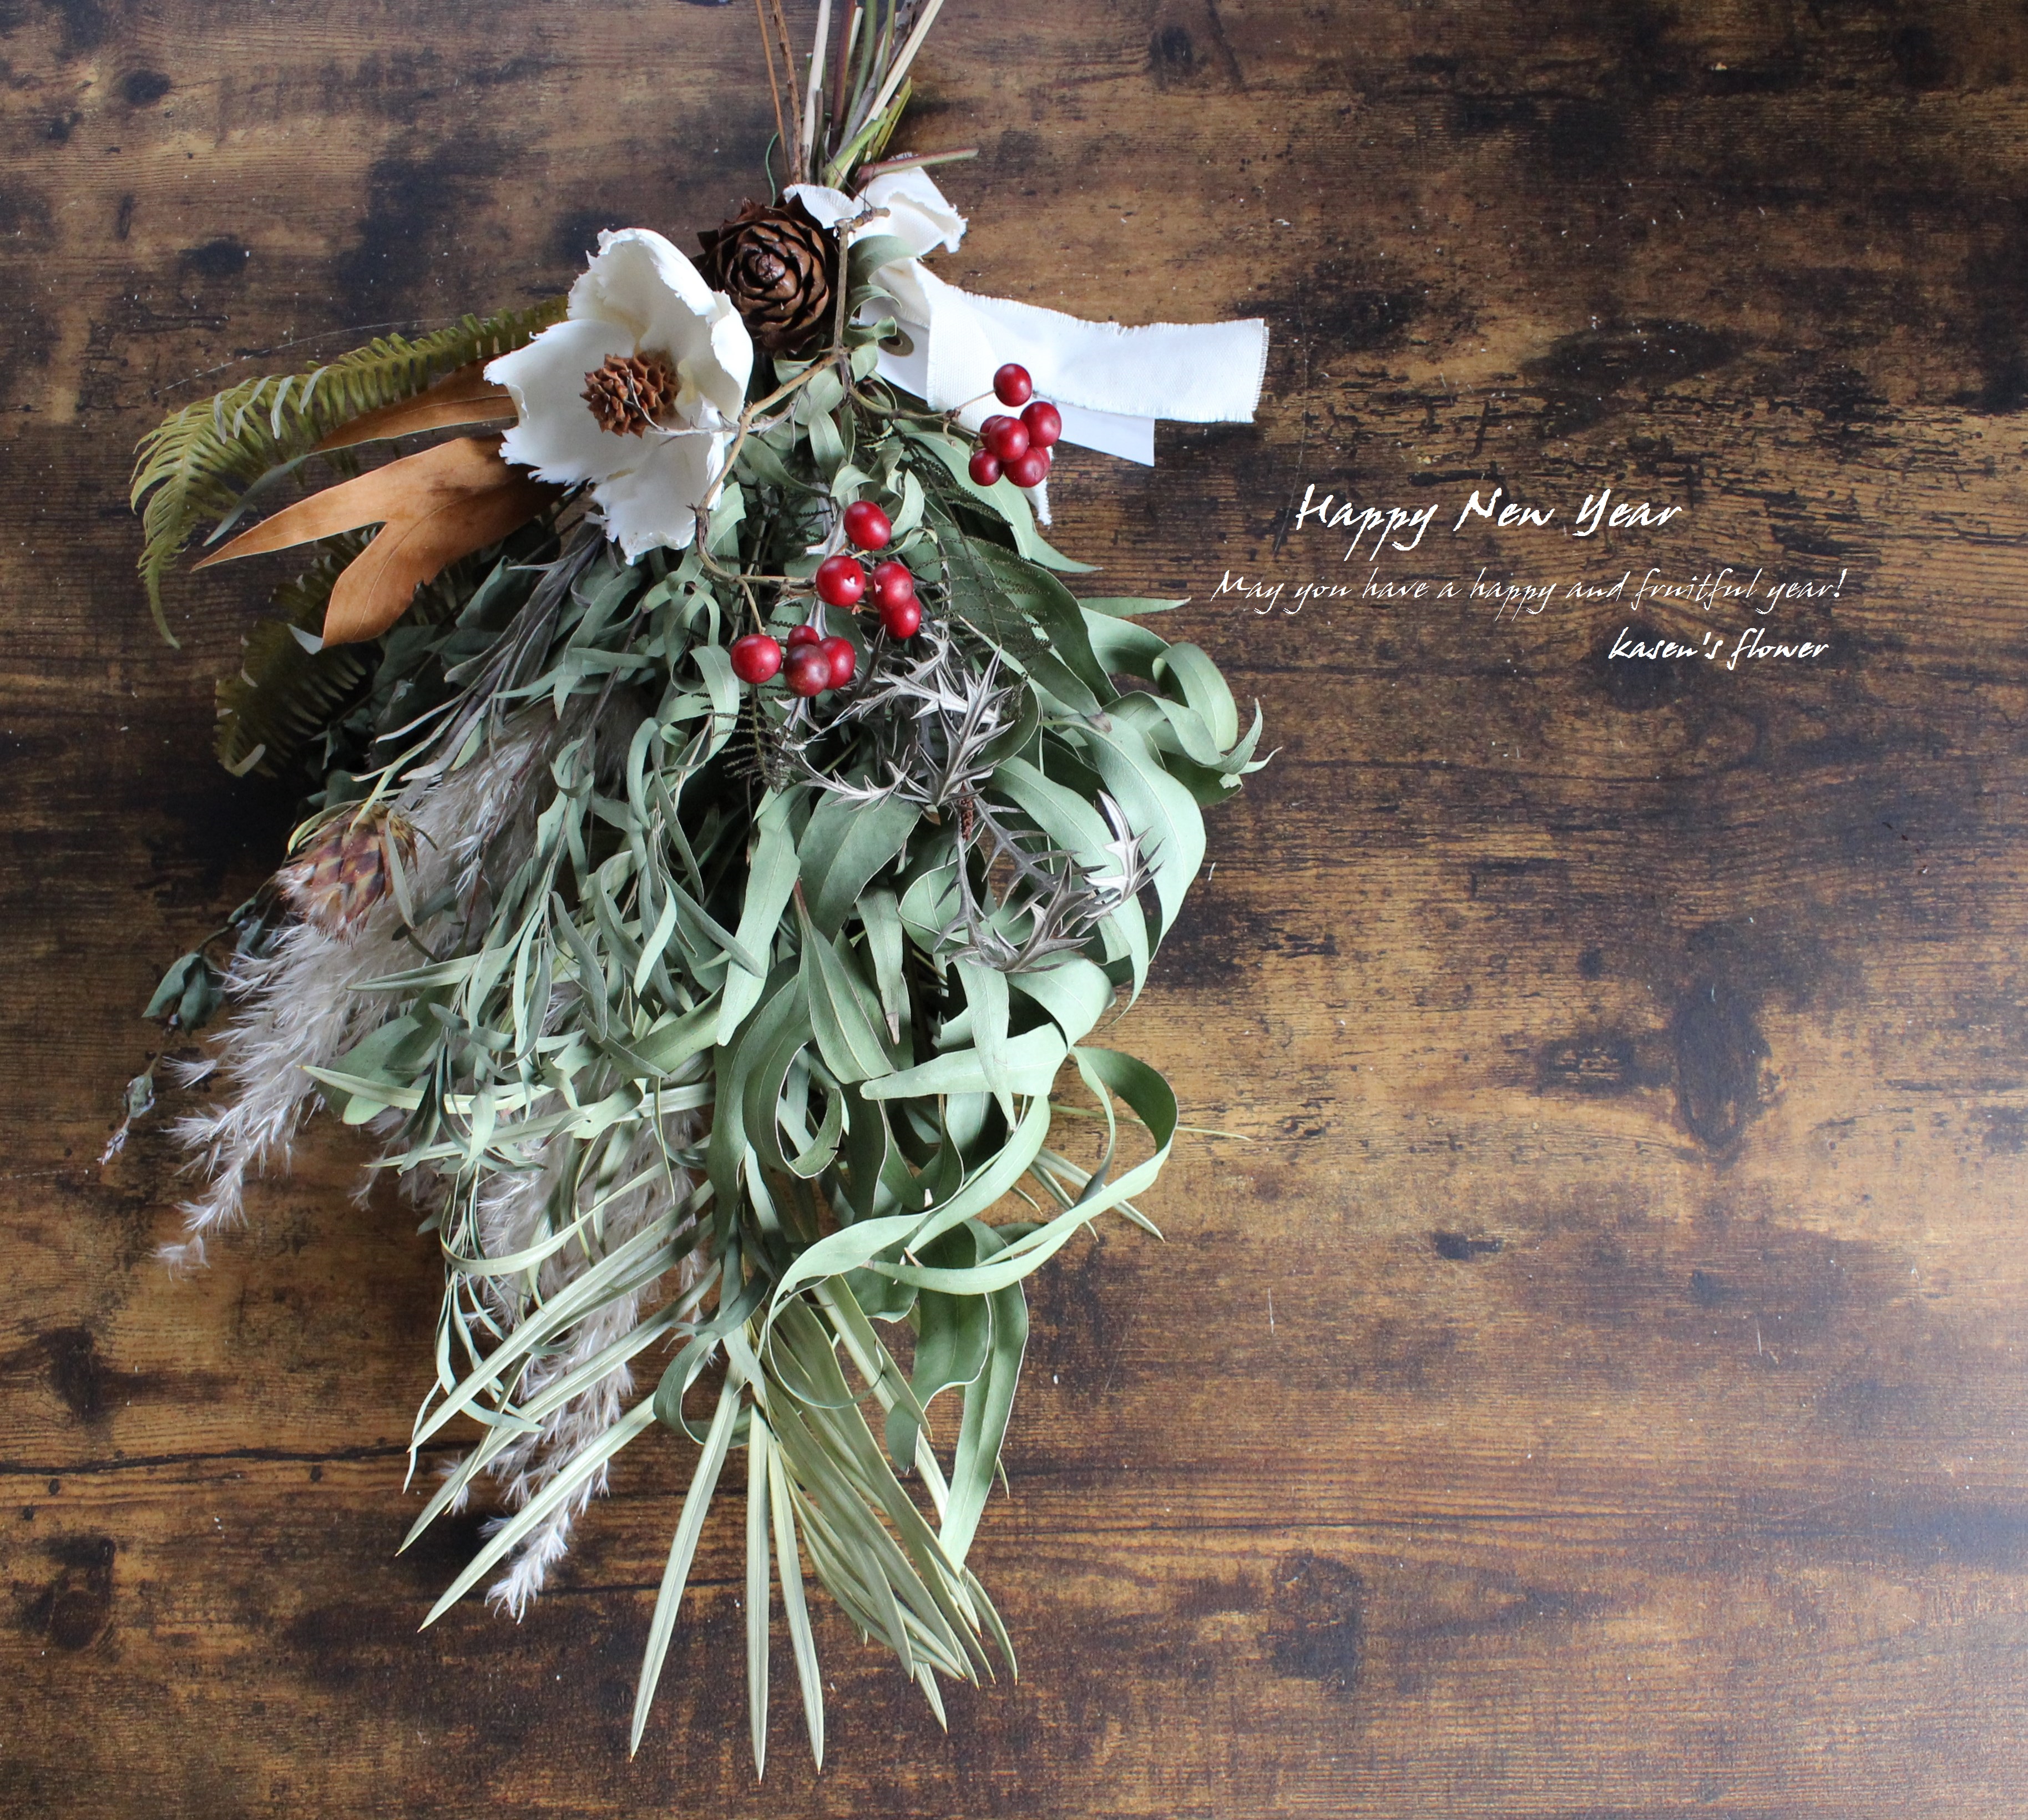 ナチュラル16自家栽培ドライ含むしめ飾り しめ縄 正月 松飾り リースワッグプリザーブド